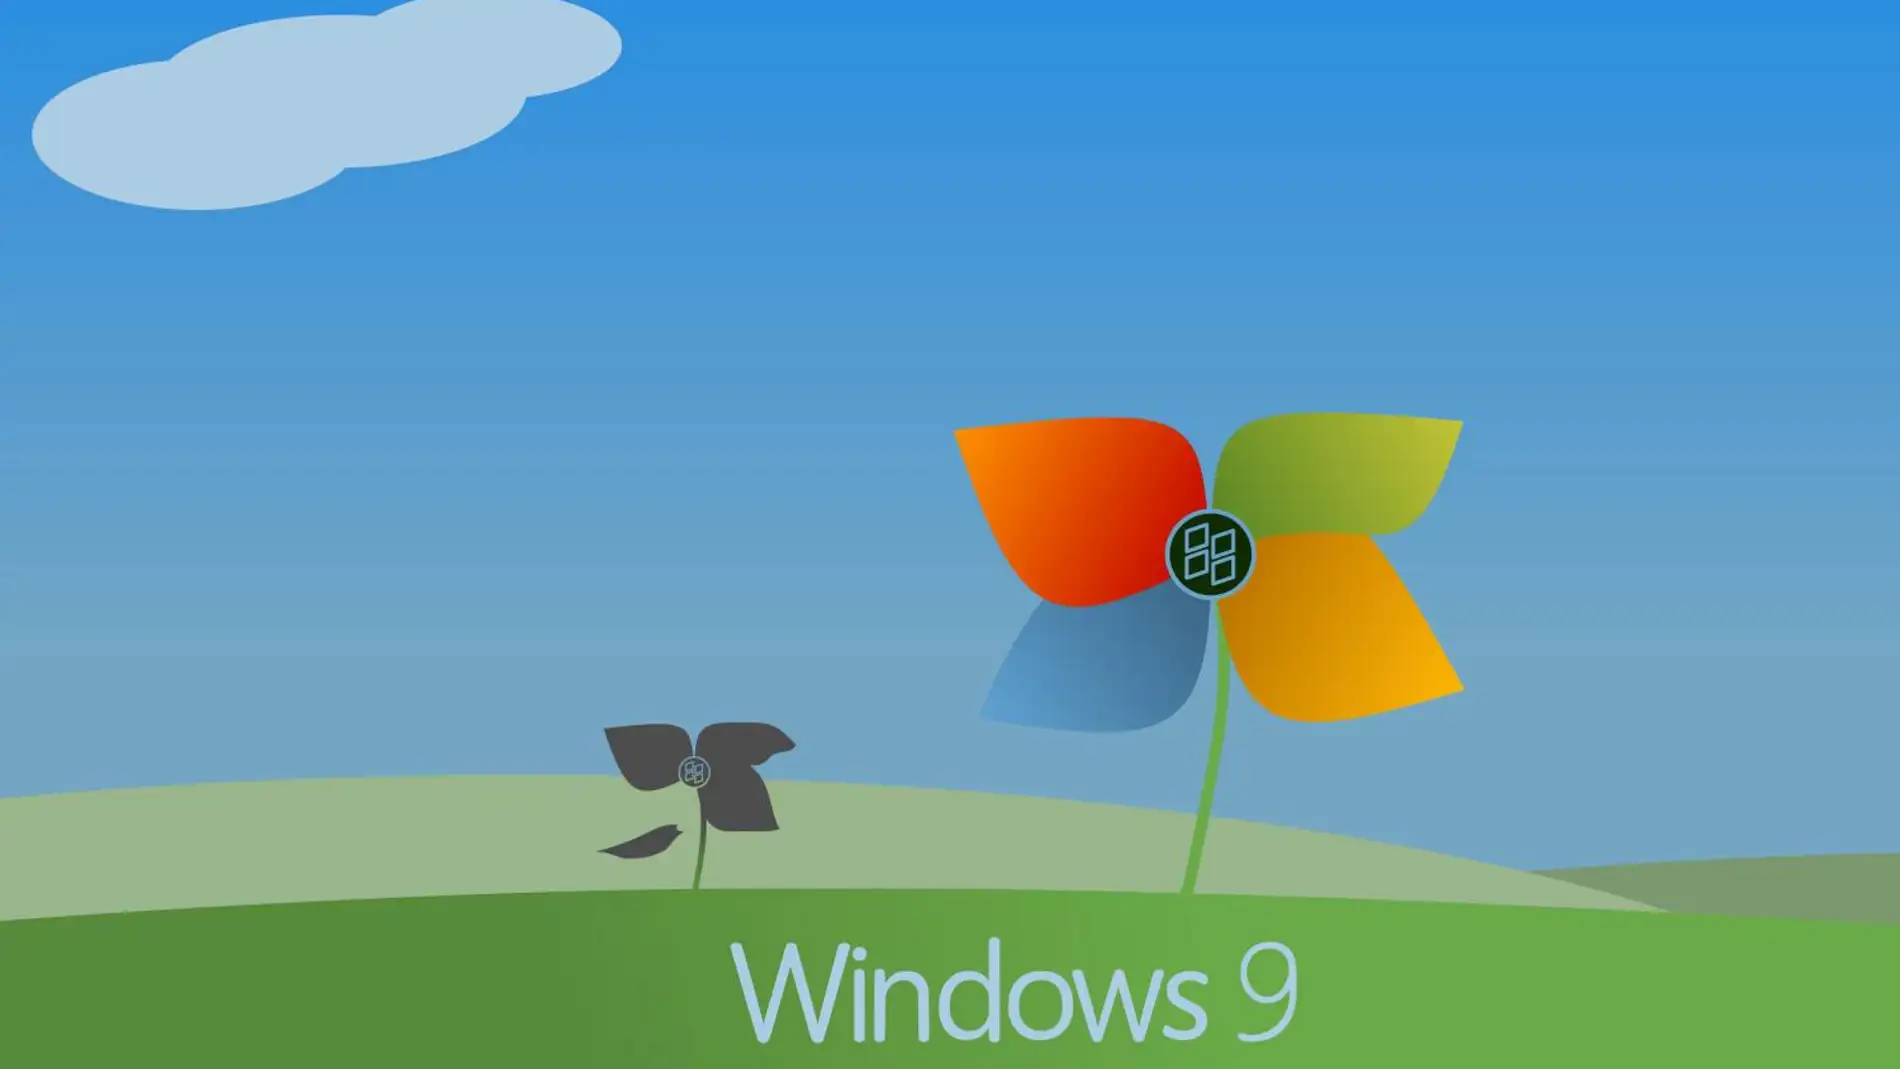 Imagen que podría tener Windows 9